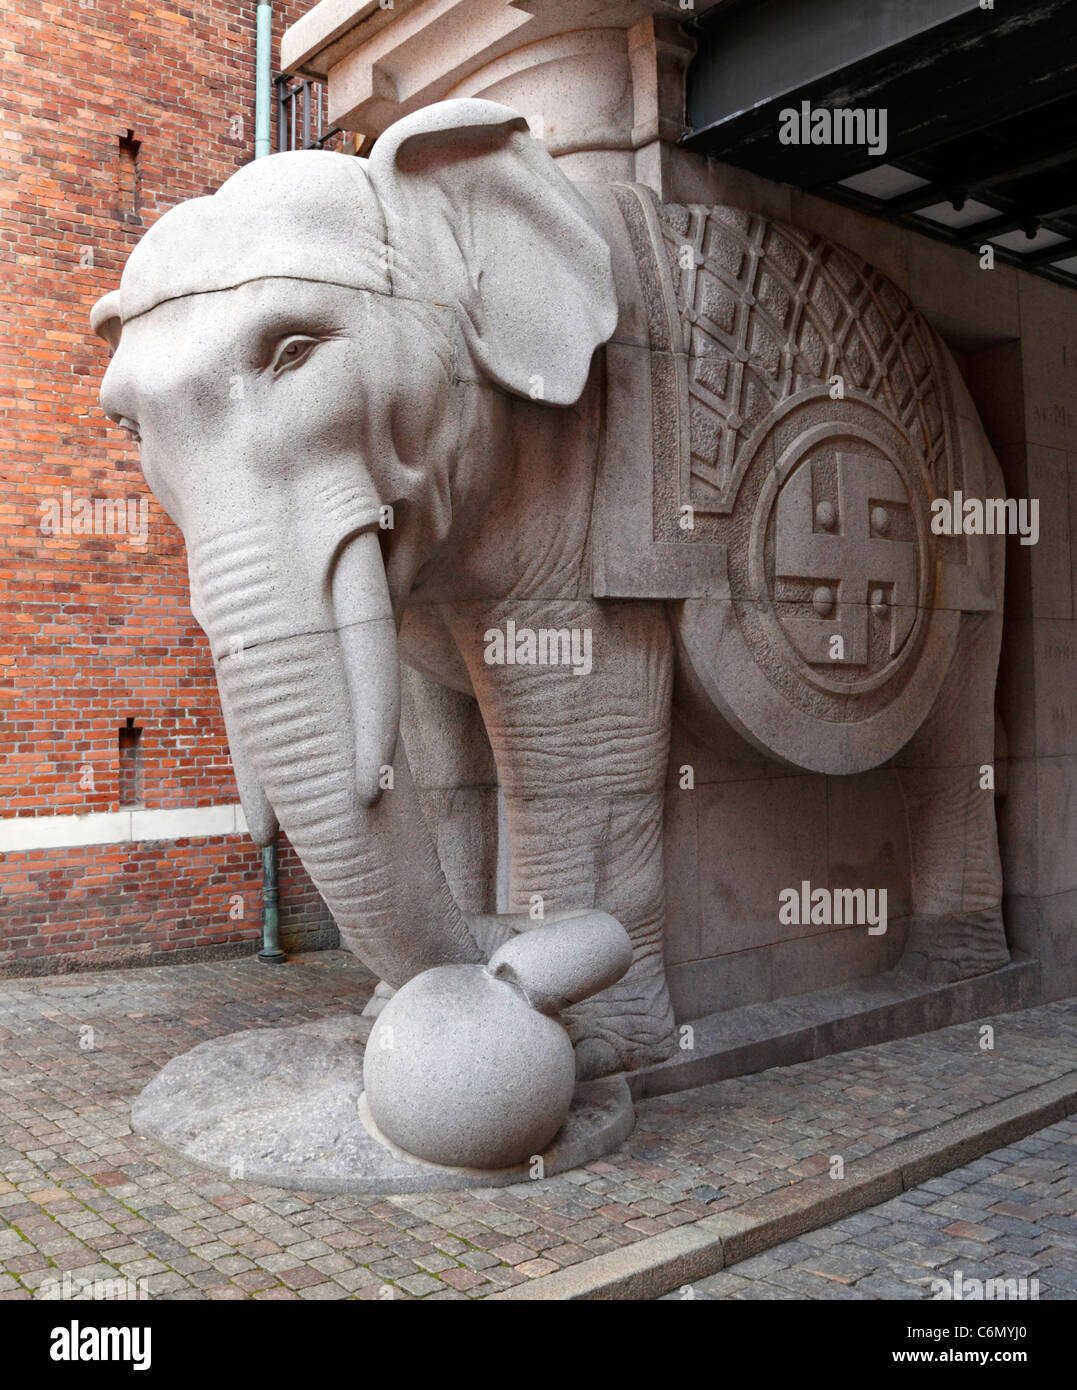 Uno degli elefanti nell'elefante porta (entrata) per la vecchia fabbrica di birra Carlsberg, Copenhagen, Danimarca Foto Stock